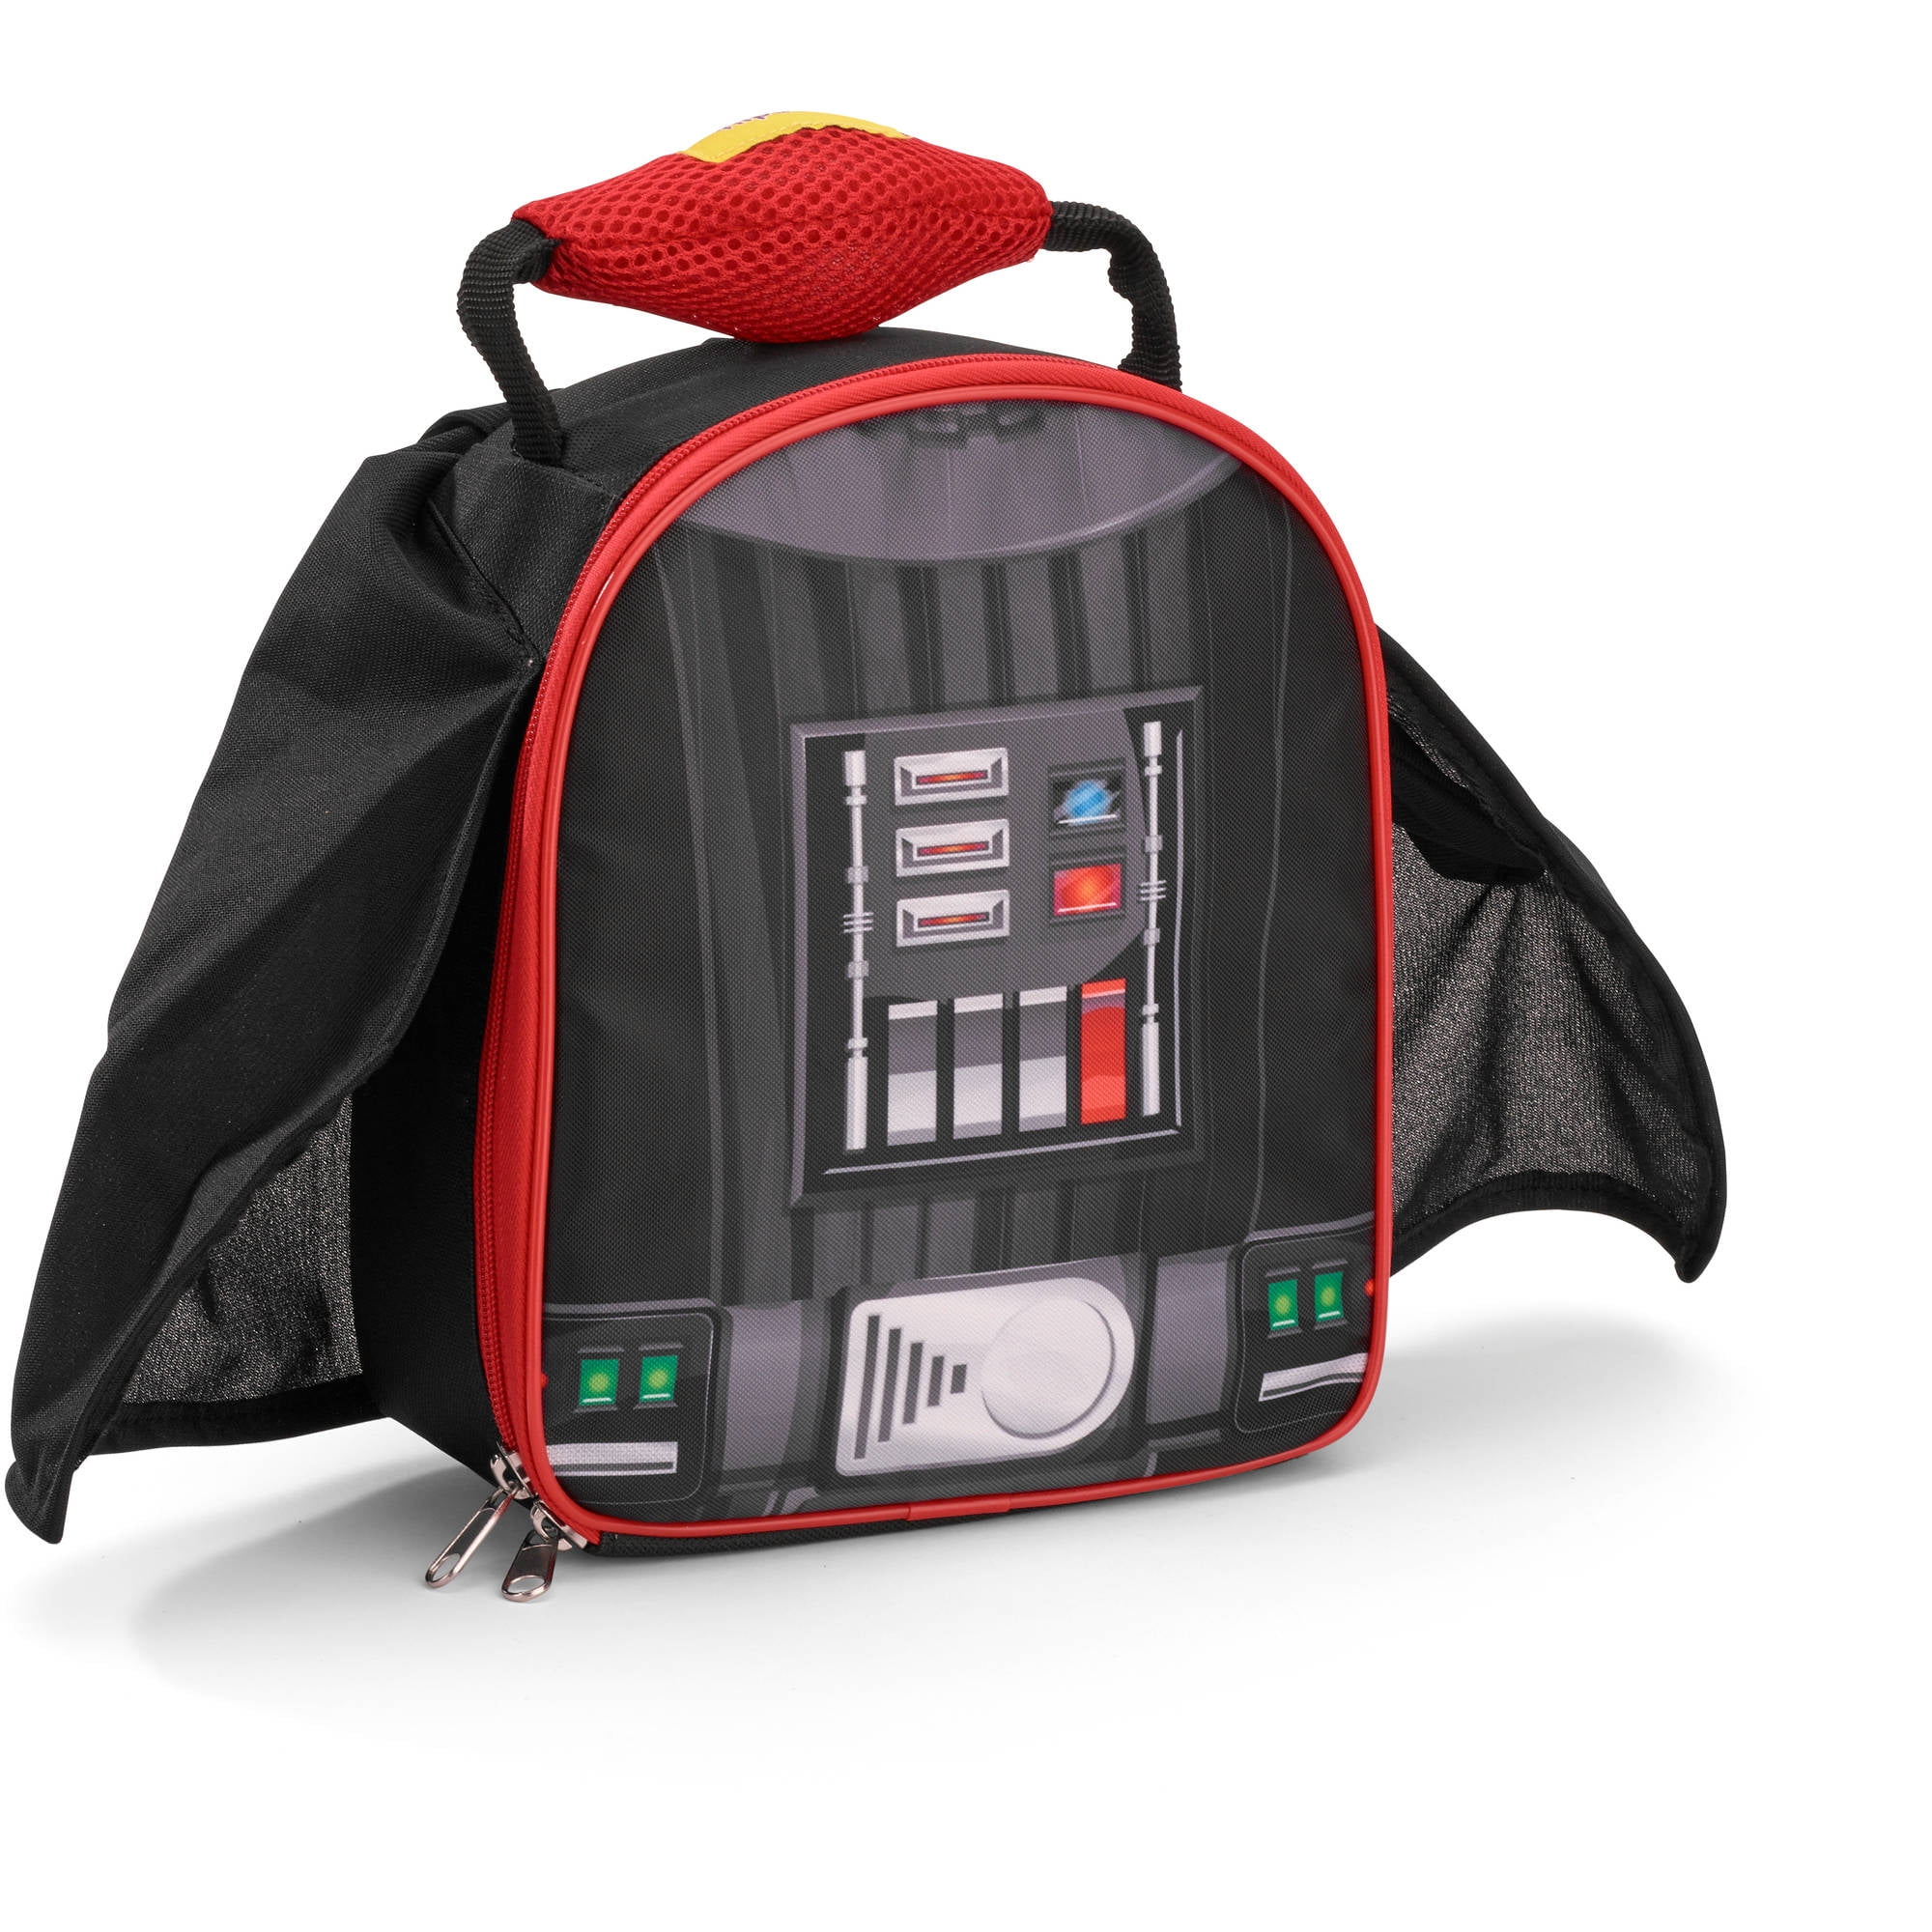 Disney Lego Star Wars Insulated Lunch Bag School Boys Lunch box Darth Vader  New